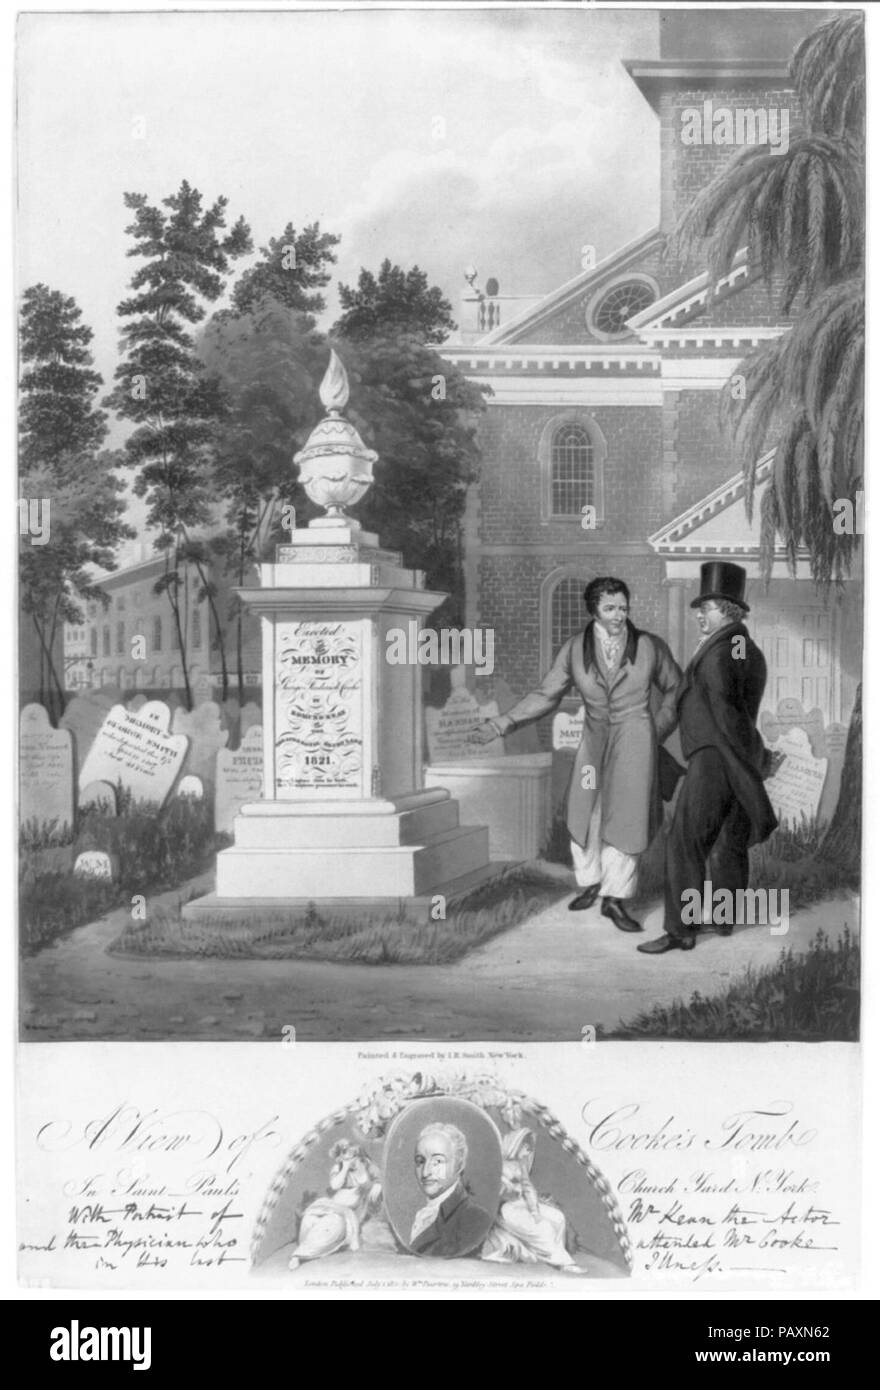 Ein Blick auf Cooke's Grab in St. Paul's Church Yard, New York - gemalt und von I.R. Smith, New York eingraviert. Stockfoto